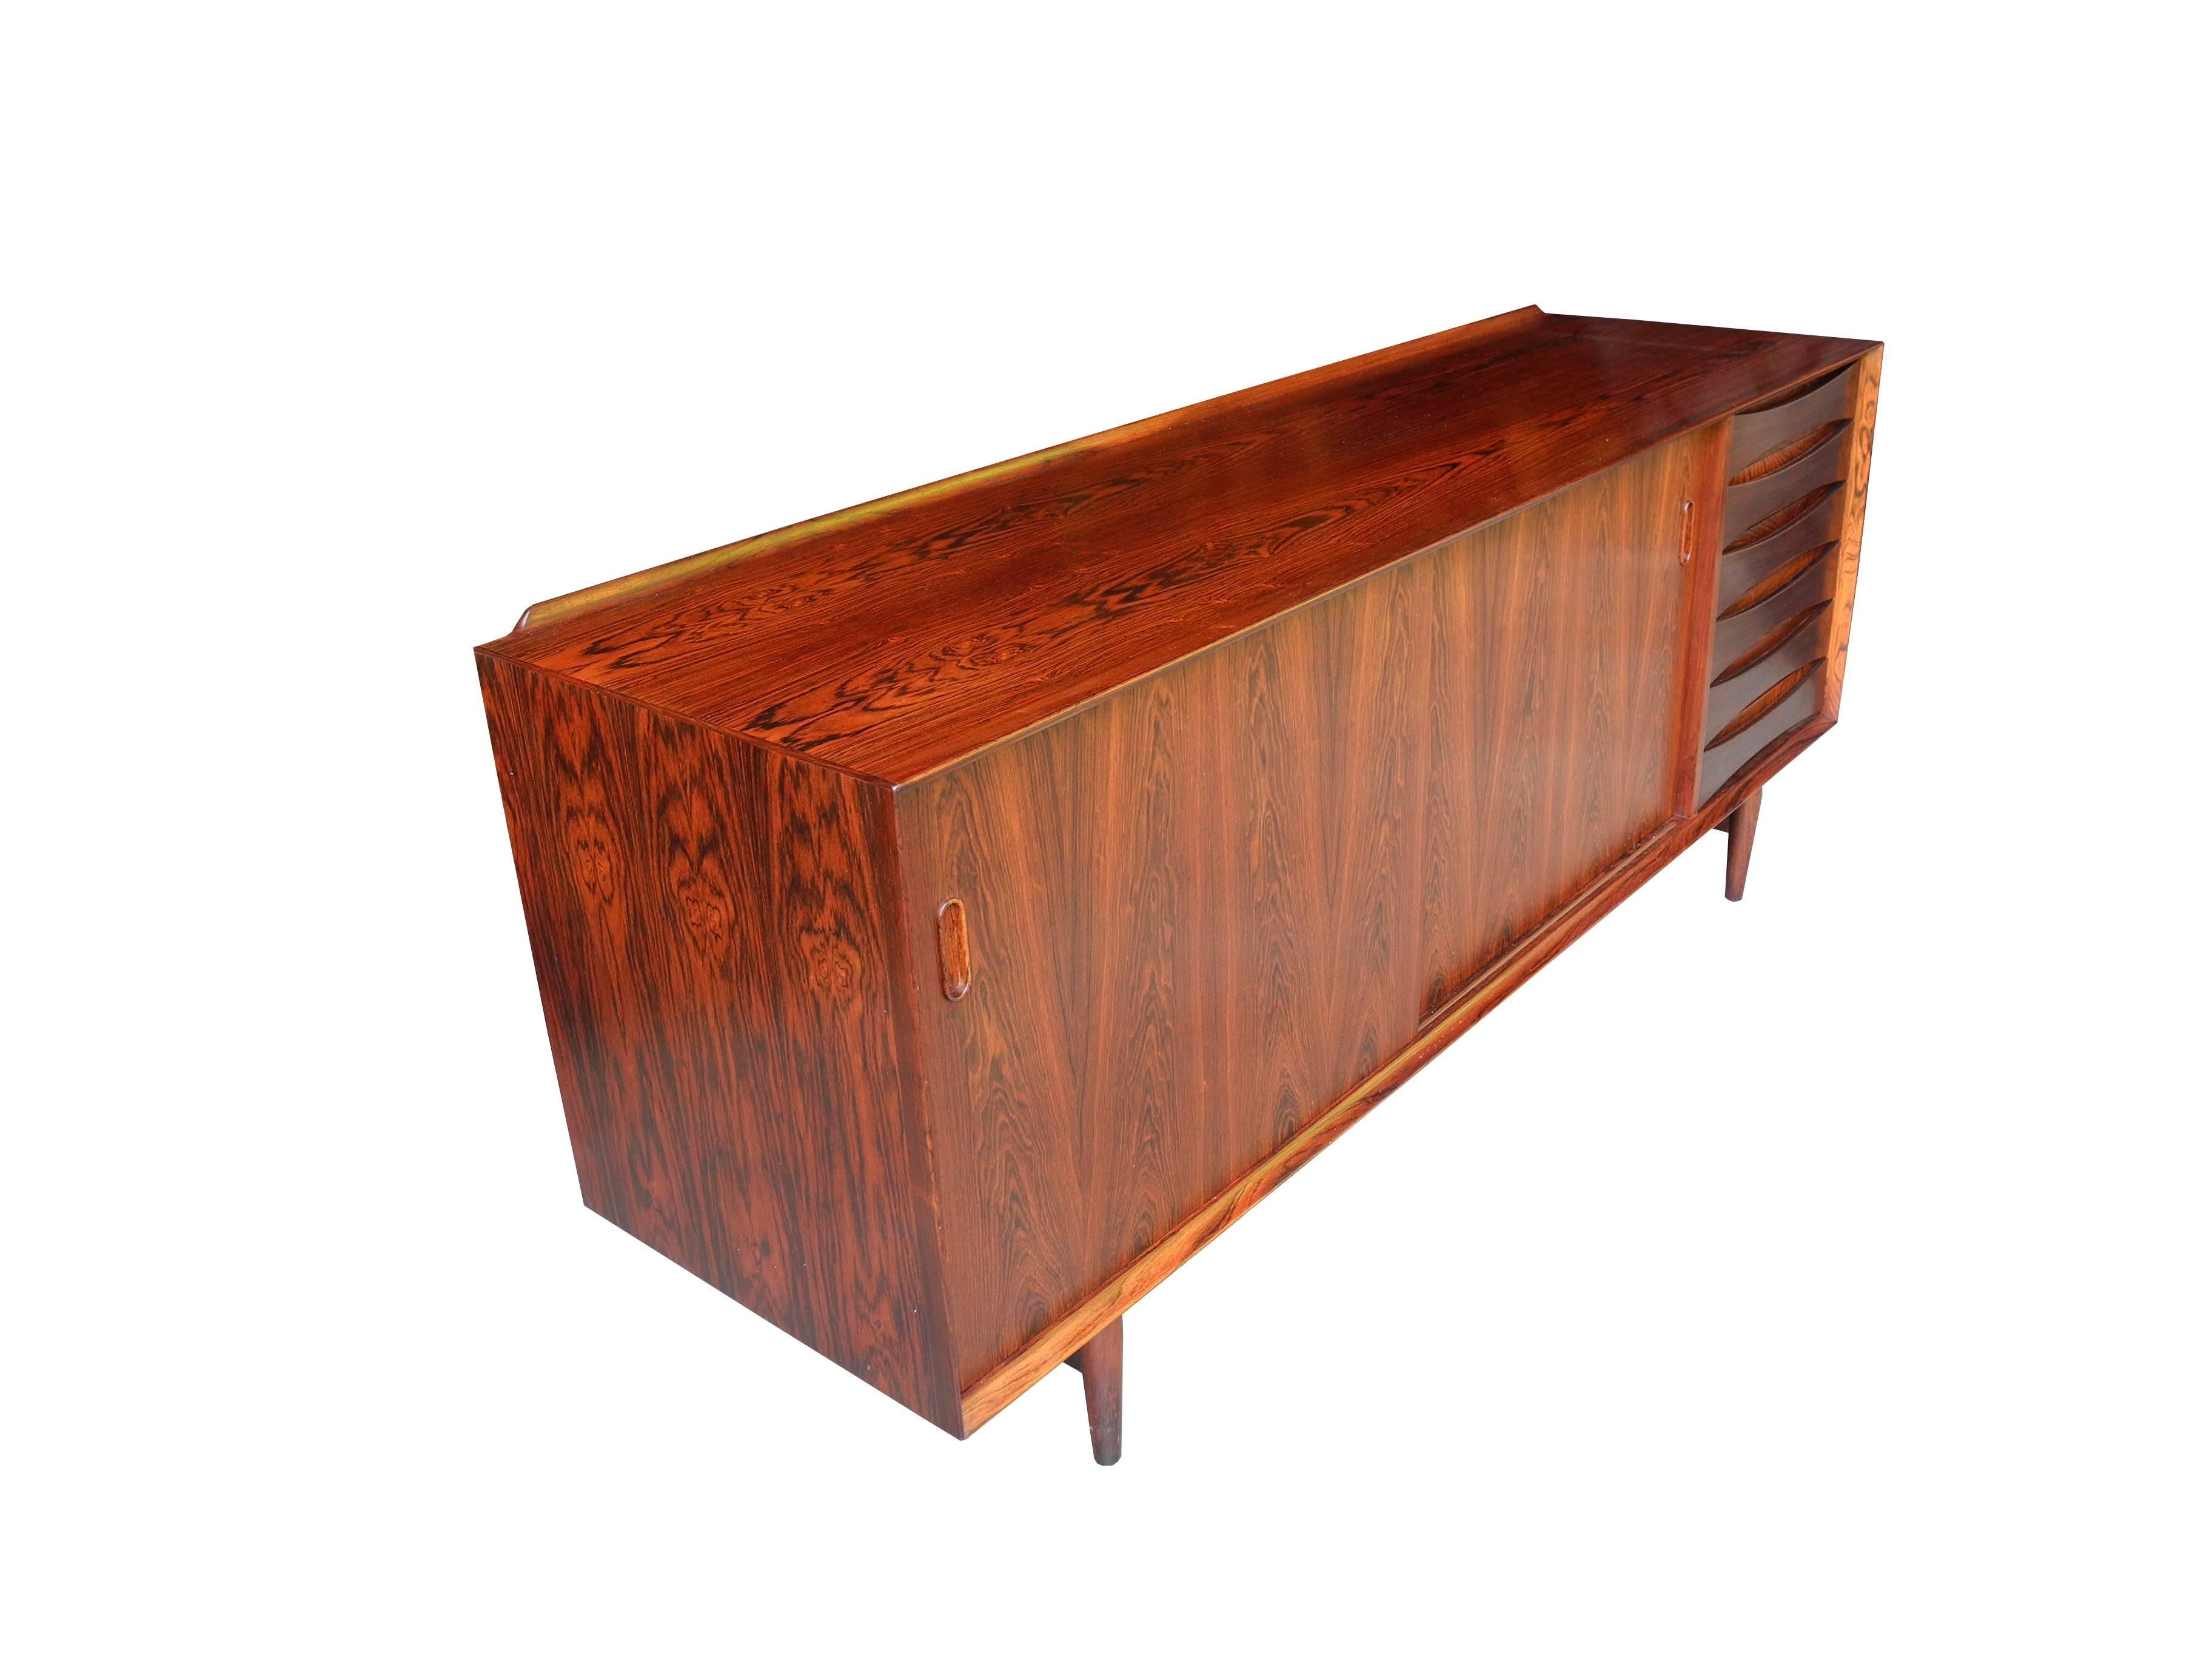 Danish Modern Rosewood Sideboard or Credenza by Arne Vodder 1